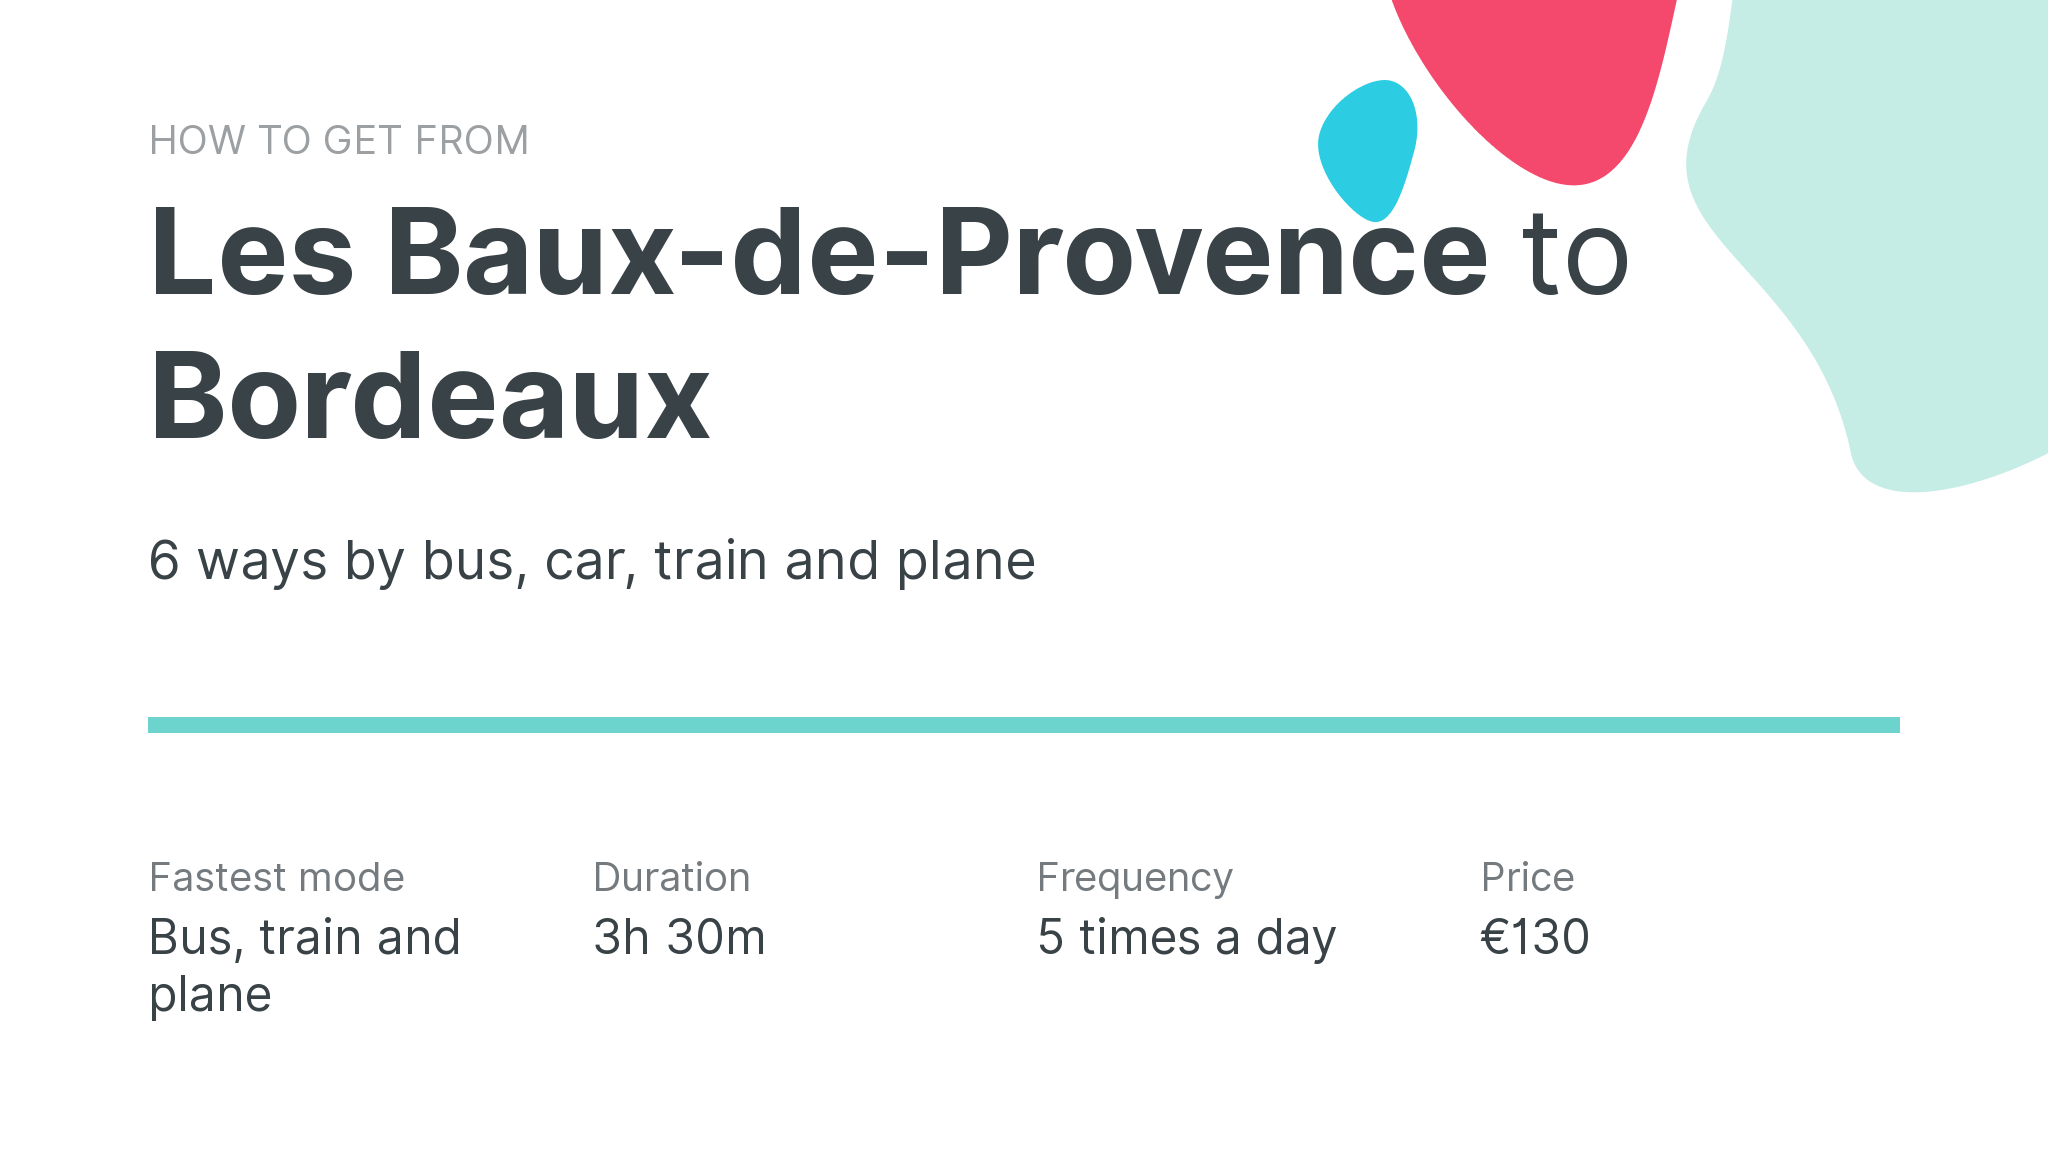 How do I get from Les Baux-de-Provence to Bordeaux